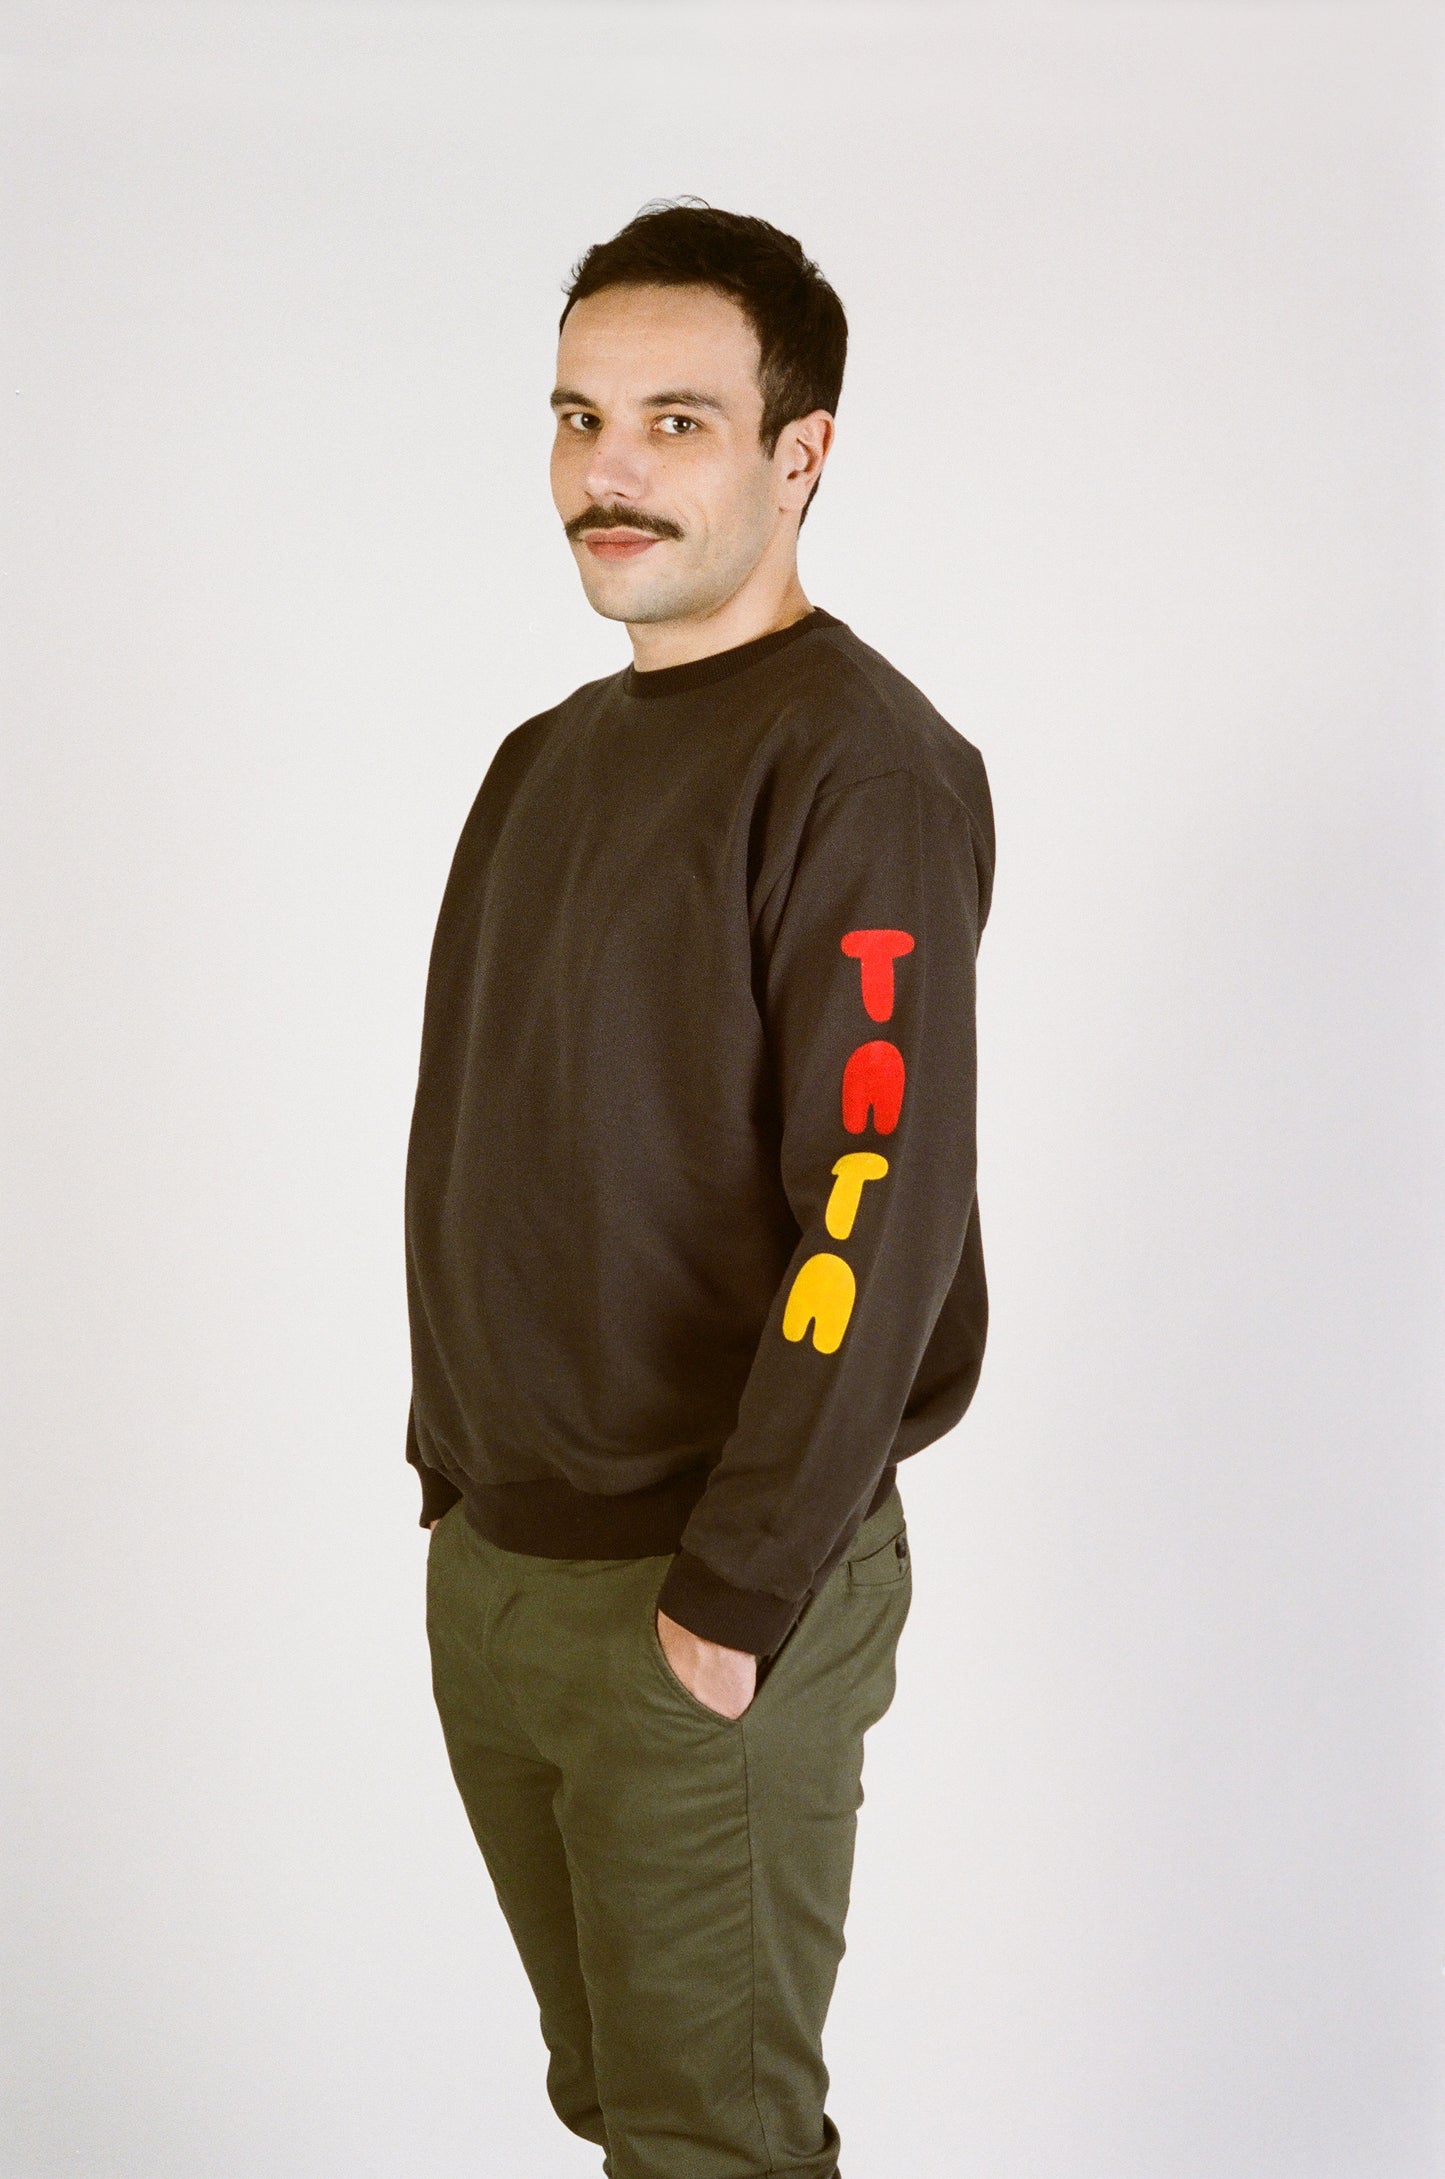 Teddy Brown -  personalised adults sweatshirt